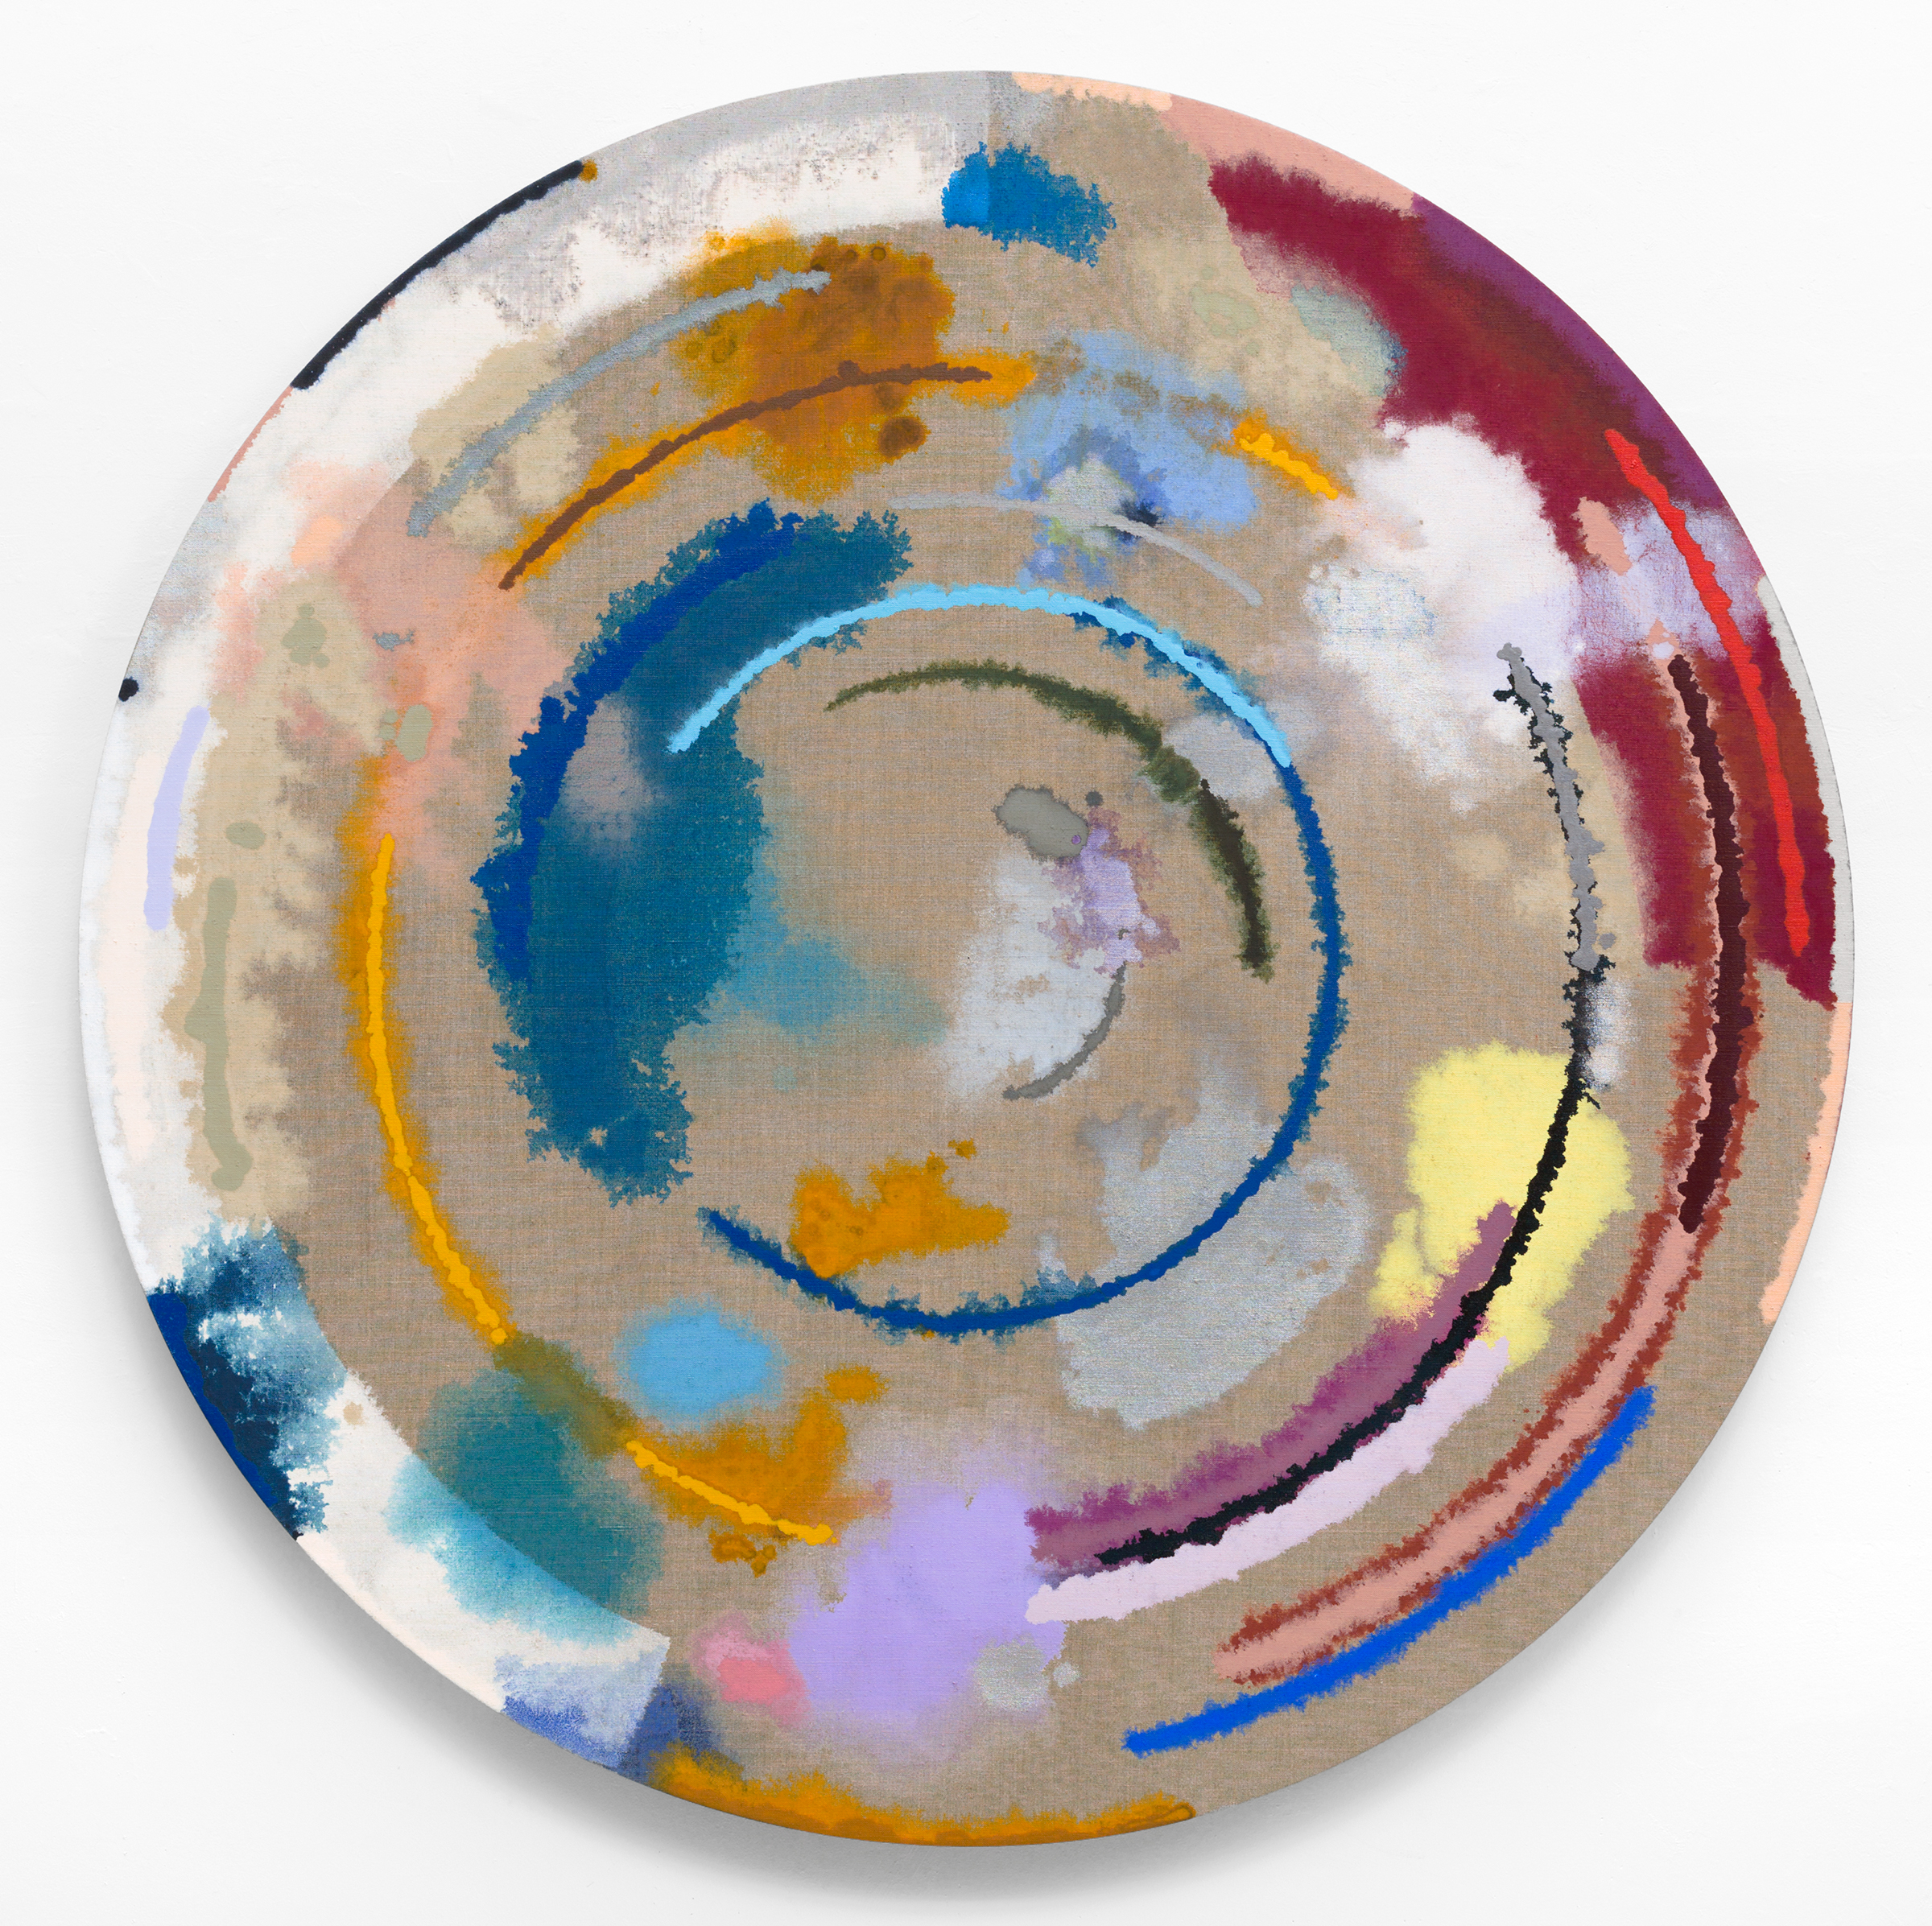   PAMELA JORDEN   Untitled,&nbsp; 2016, oil on linen, 48" diameter 